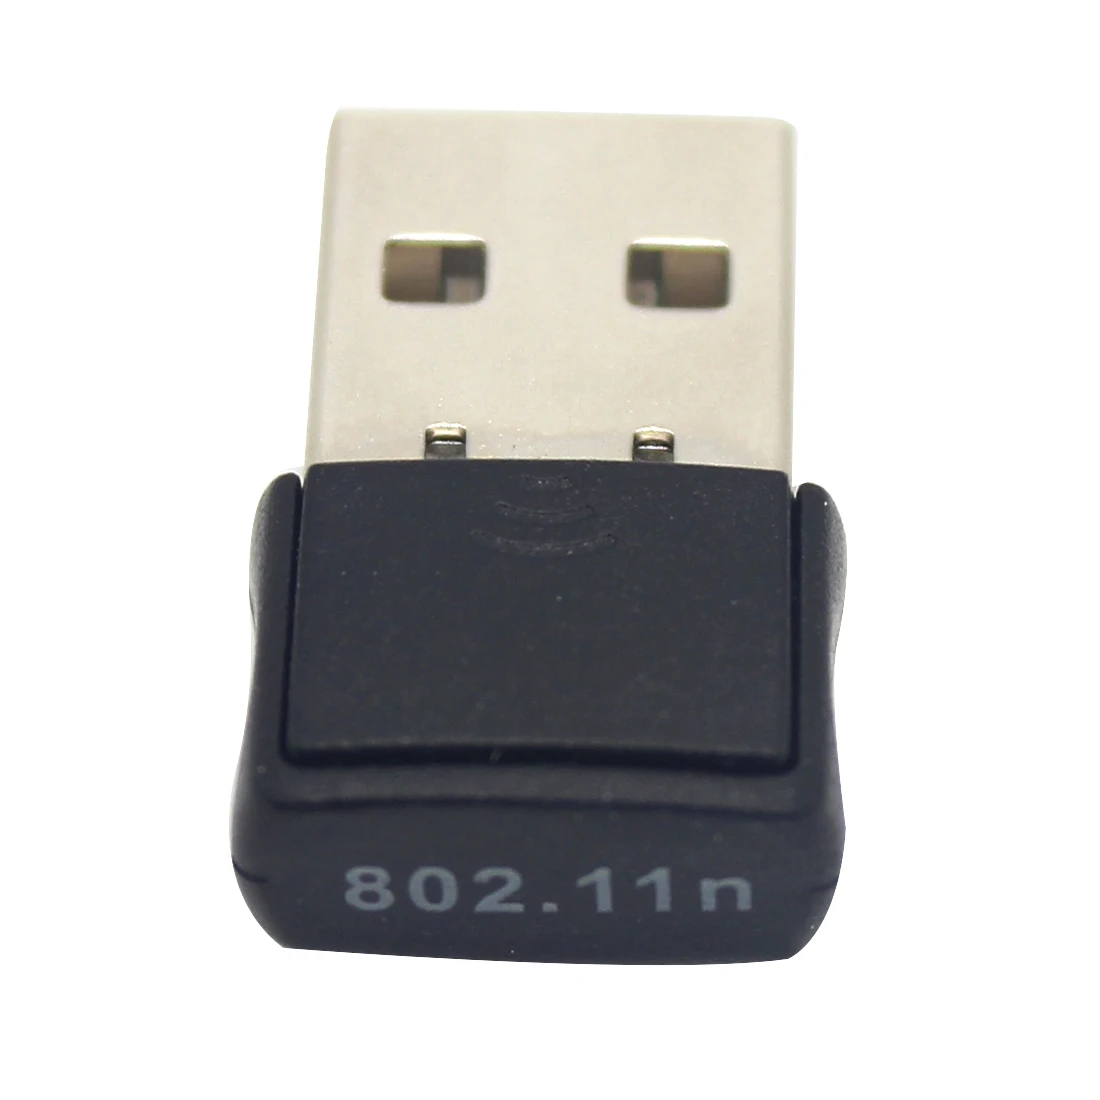 USB  Wi-Fi  NOYOKERE  LAN    802.11N